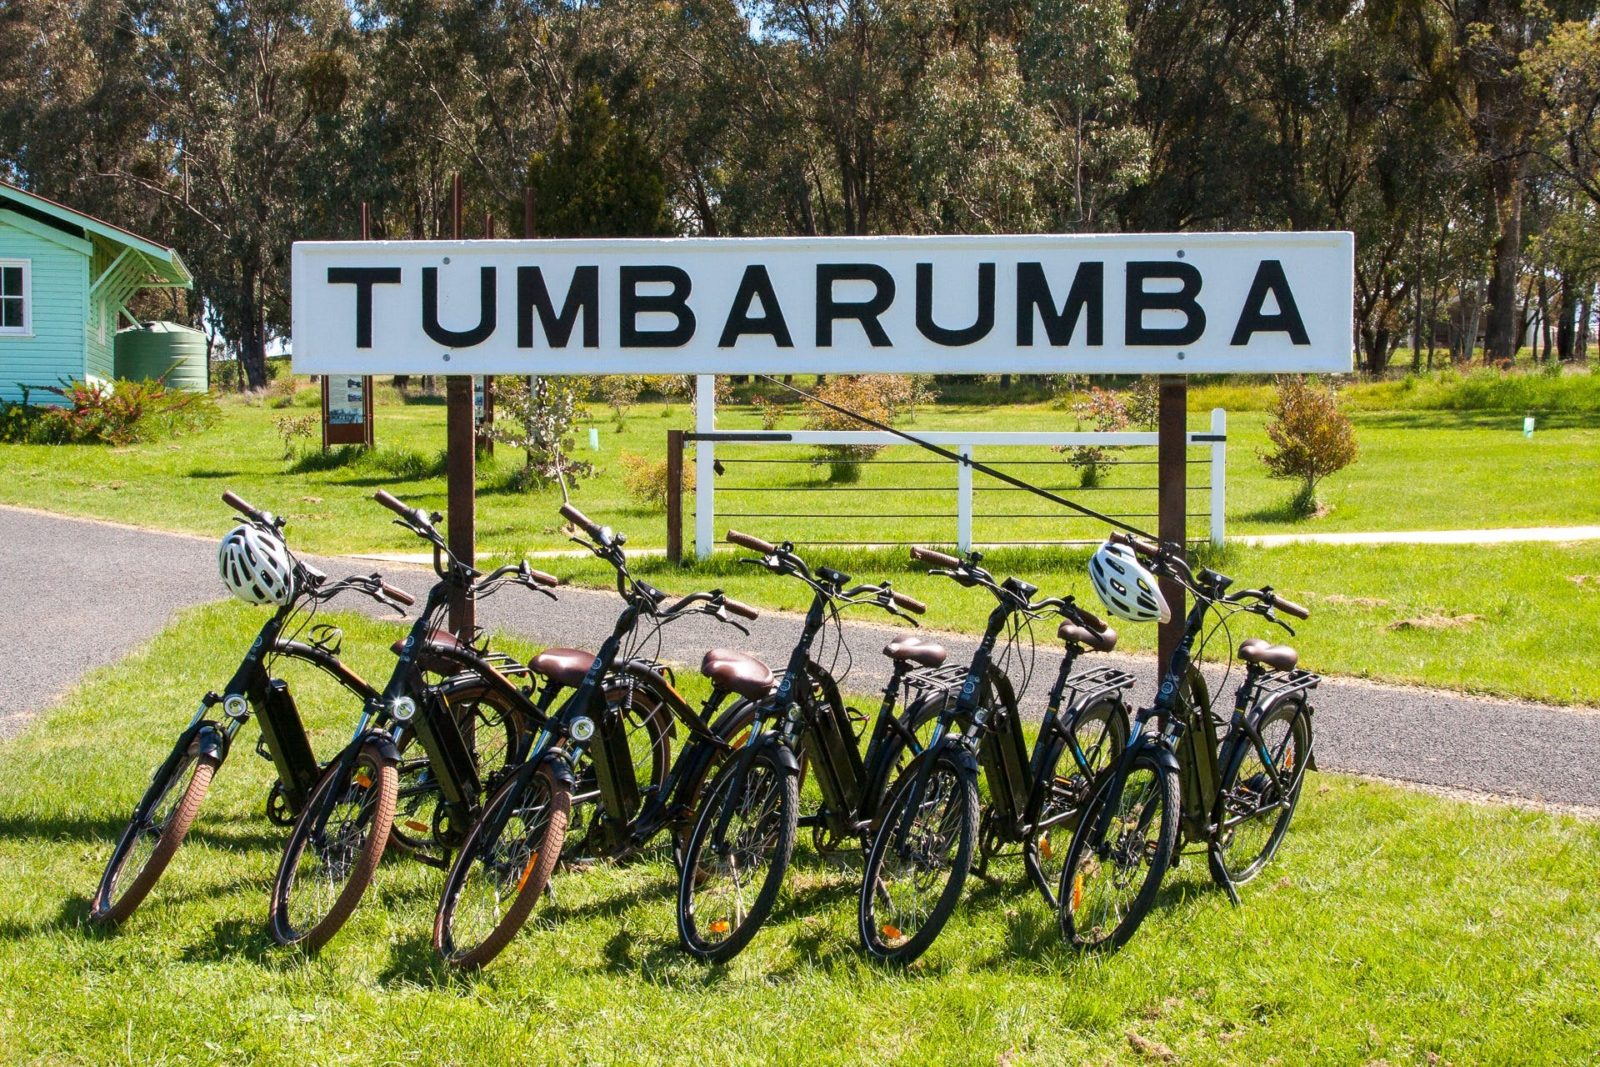 E-bikes at the Tumbarumba Trail Head